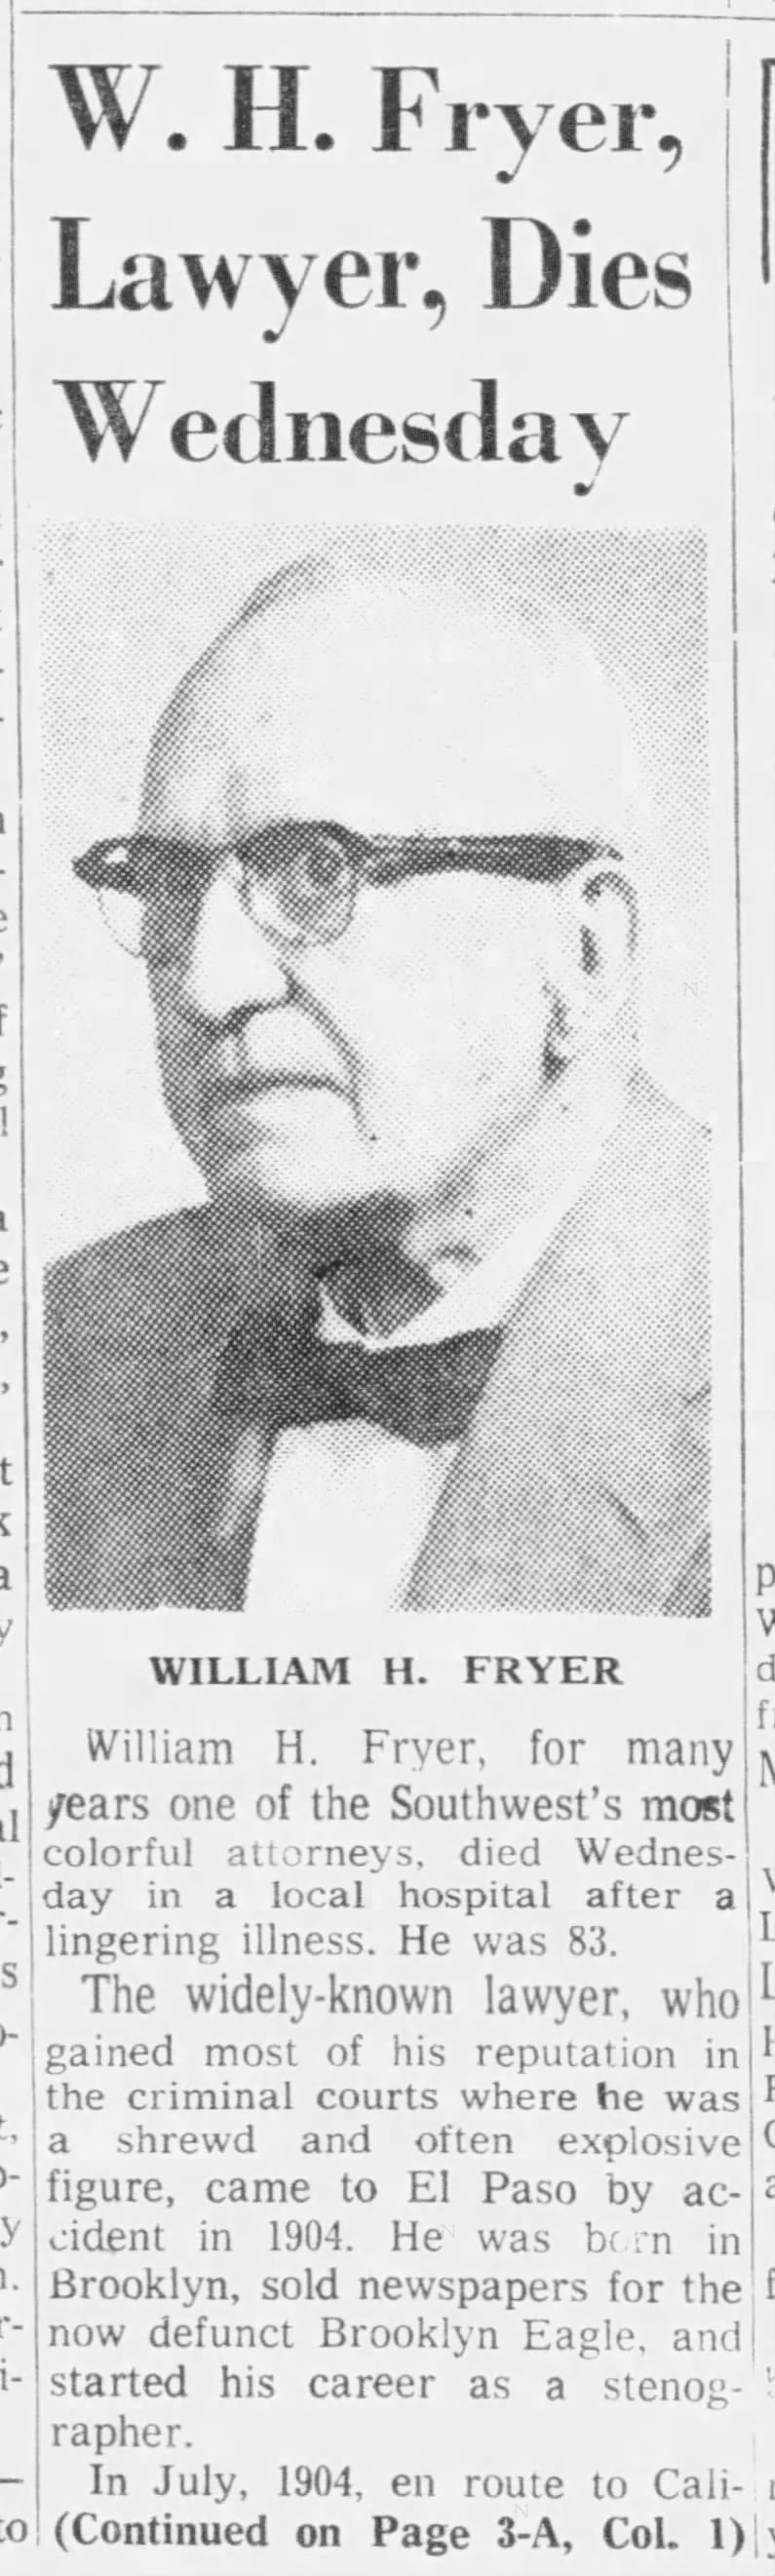 W. H. Fryer, Lawyer, Dies Wednesday, pt. 1